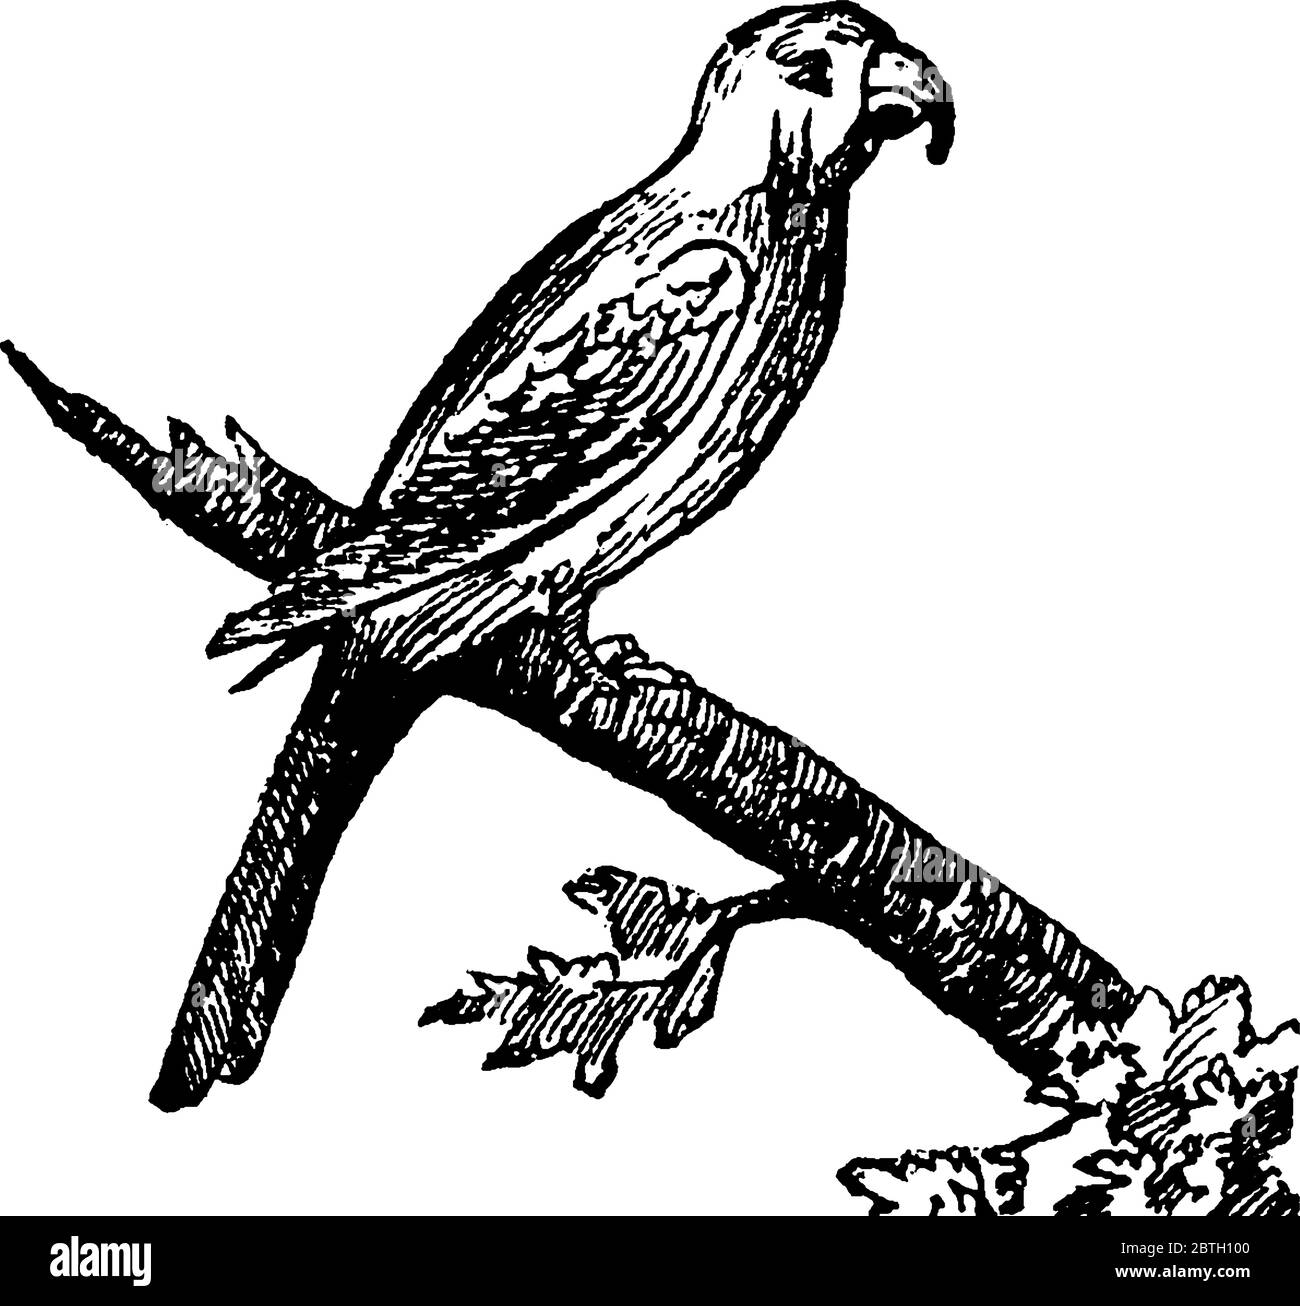 Aras sind langschwänzige, oft bunte New World Papageien, Vintage-Strichzeichnung oder Gravur Illustration. Stock Vektor